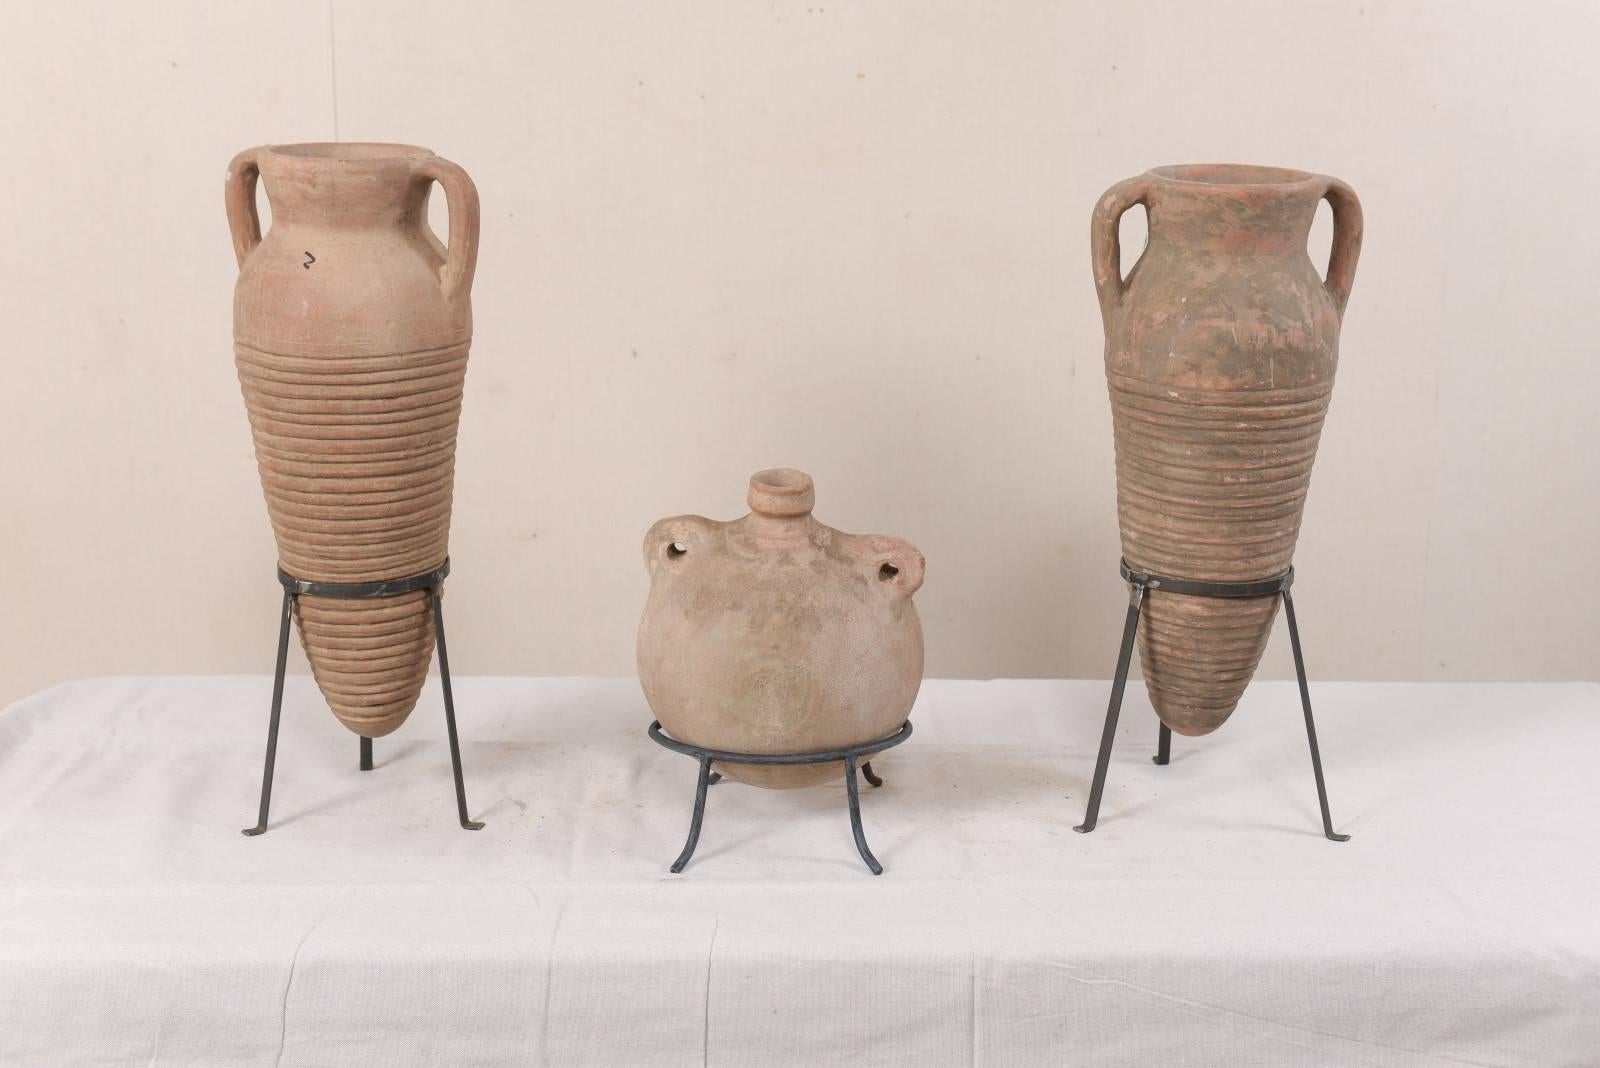 Européen Collection de trois pots en terre cuite de style colonial espagnol méditerranéen en vente